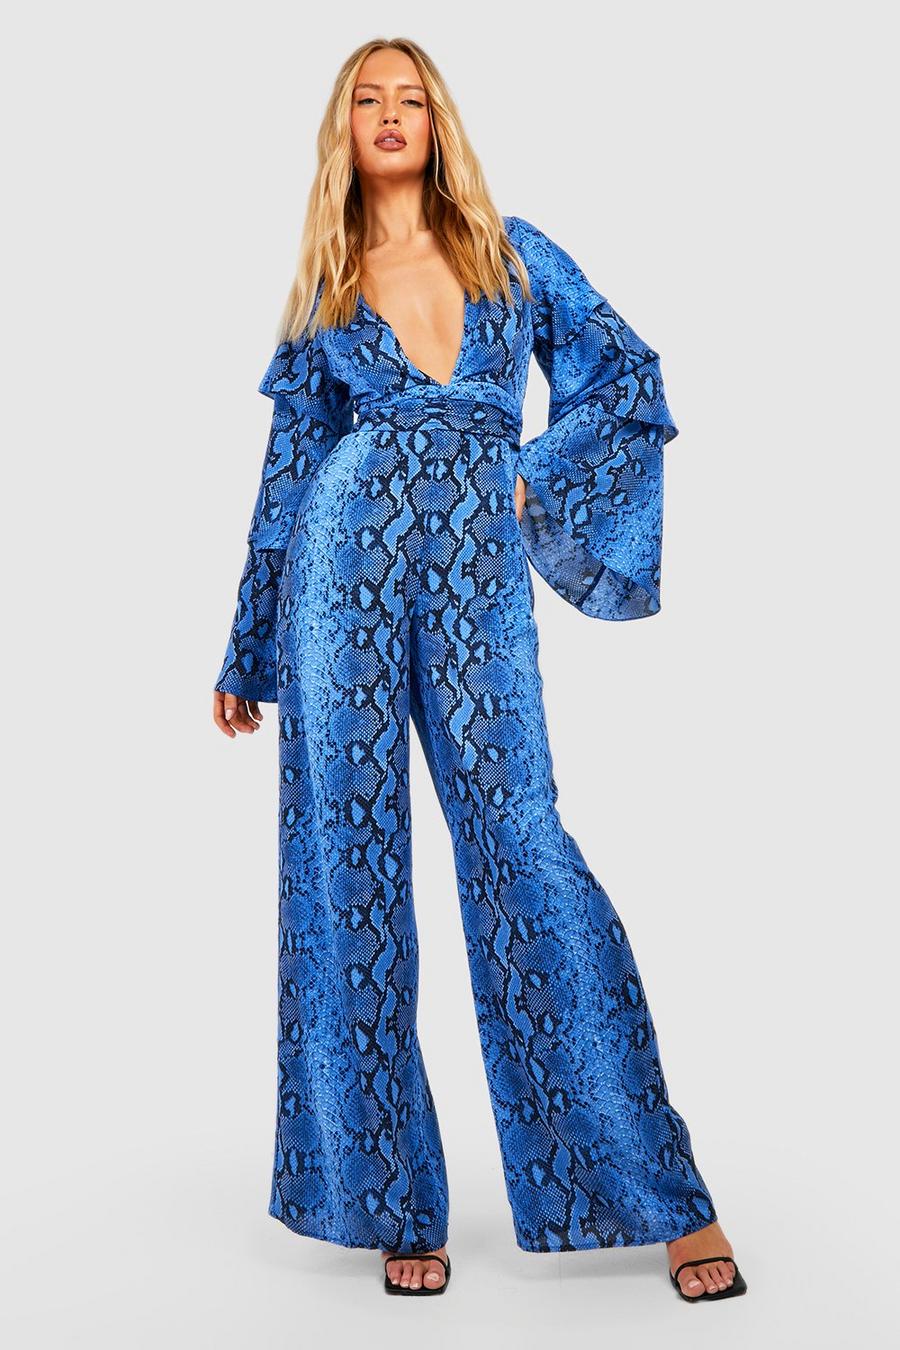 Tall Neon Schlagenprint Rüschen-Jumpsuit mit tiefem Ausschnitt und weitem Bein, Cobalt blau